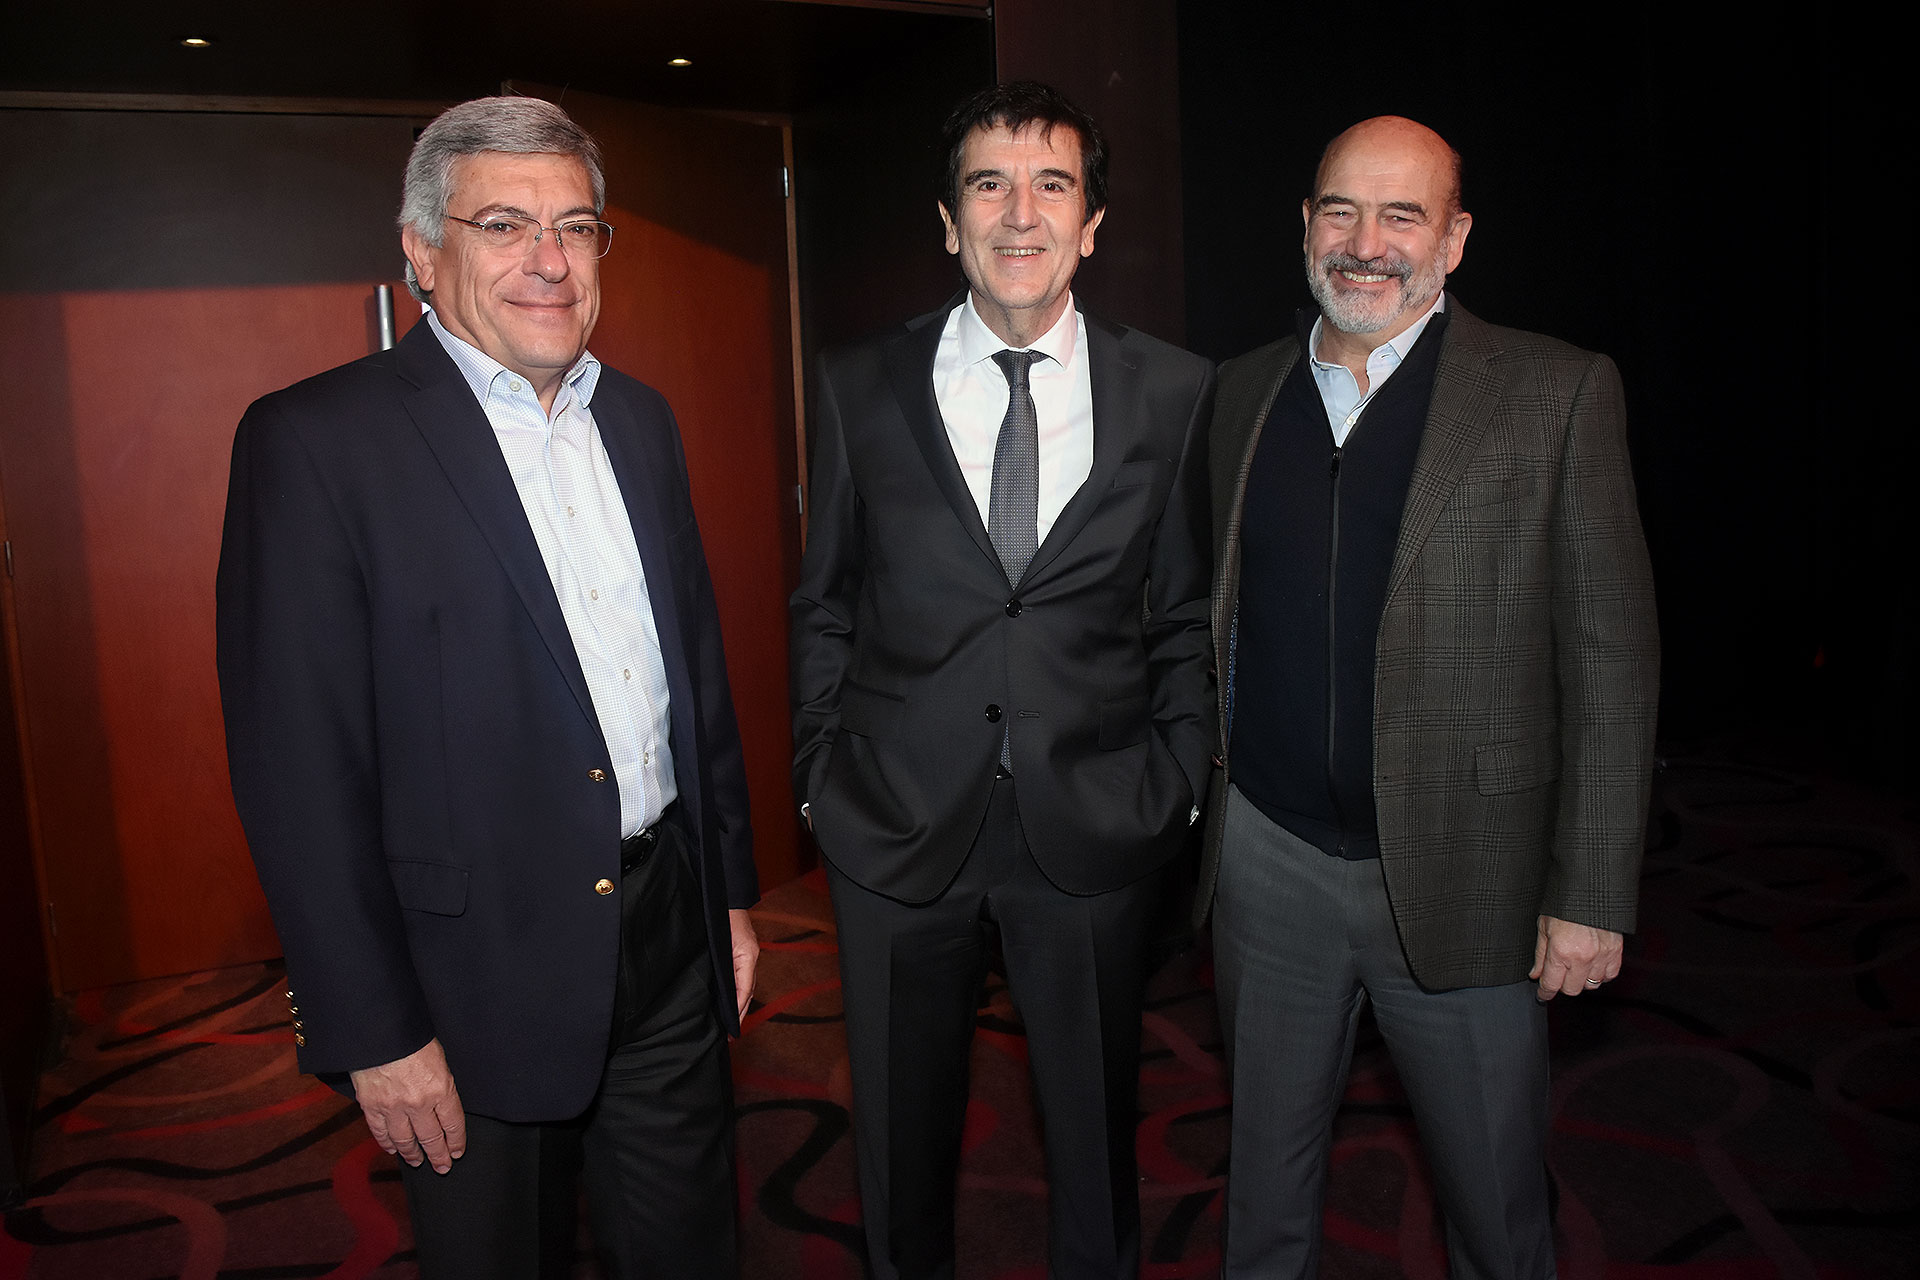 De izquierda a derecha: Martín Berardi, presidente de Ternium Argentina, el economista Carlos Melconian y David Uriburu, de Techint